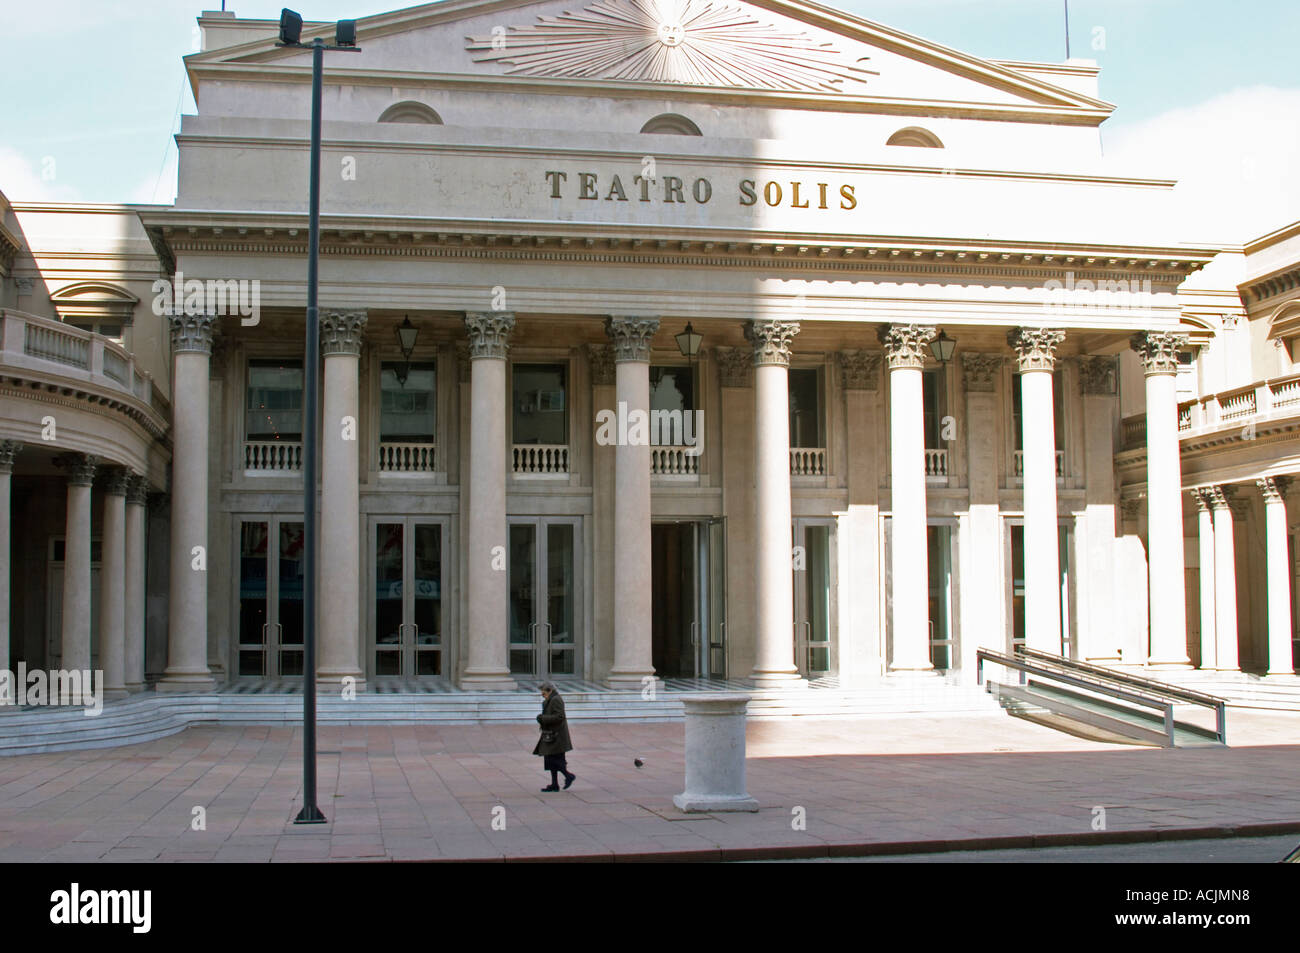 Teatro Solis Theater in Innenstadt mit imposanten Säulen an der Fassade, eine kleine Frau in schwarzen vorbeikamen. Montevideo, Uruguay, Südamerika Stockfoto